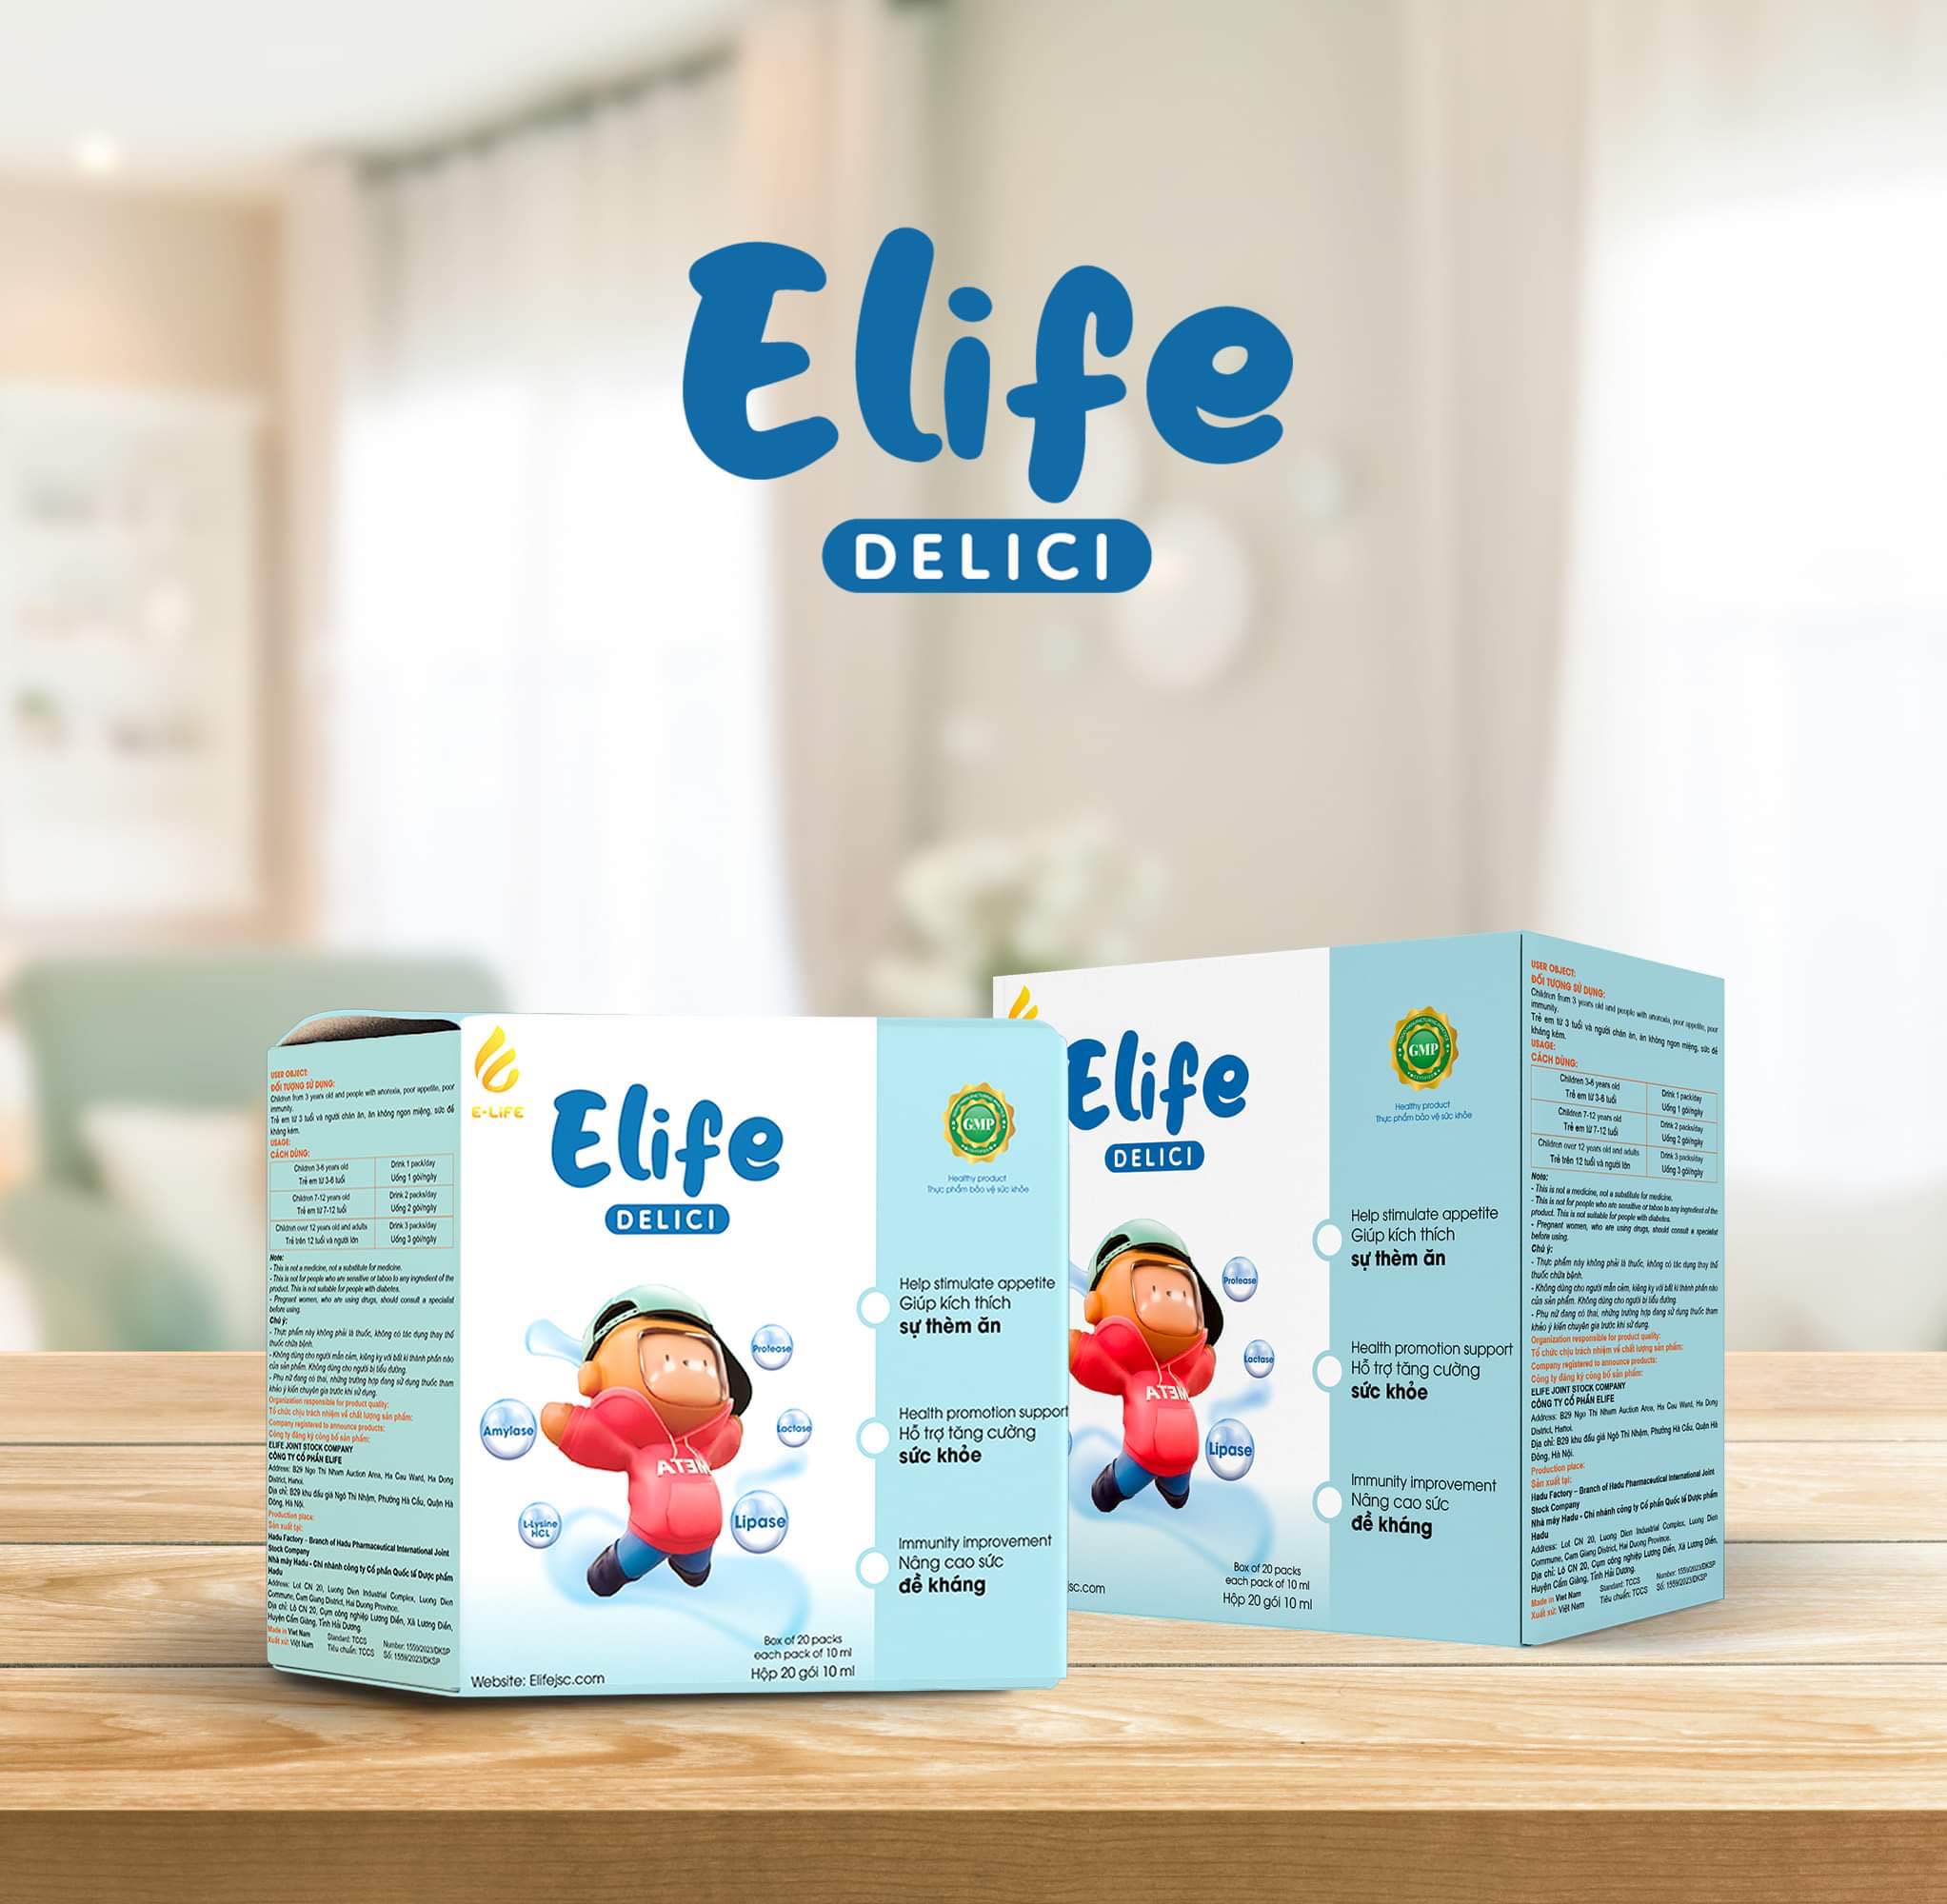 Siro ăn ngon ELIFE Delici dành cho trẻ biếng ăn và chậm tăng cân